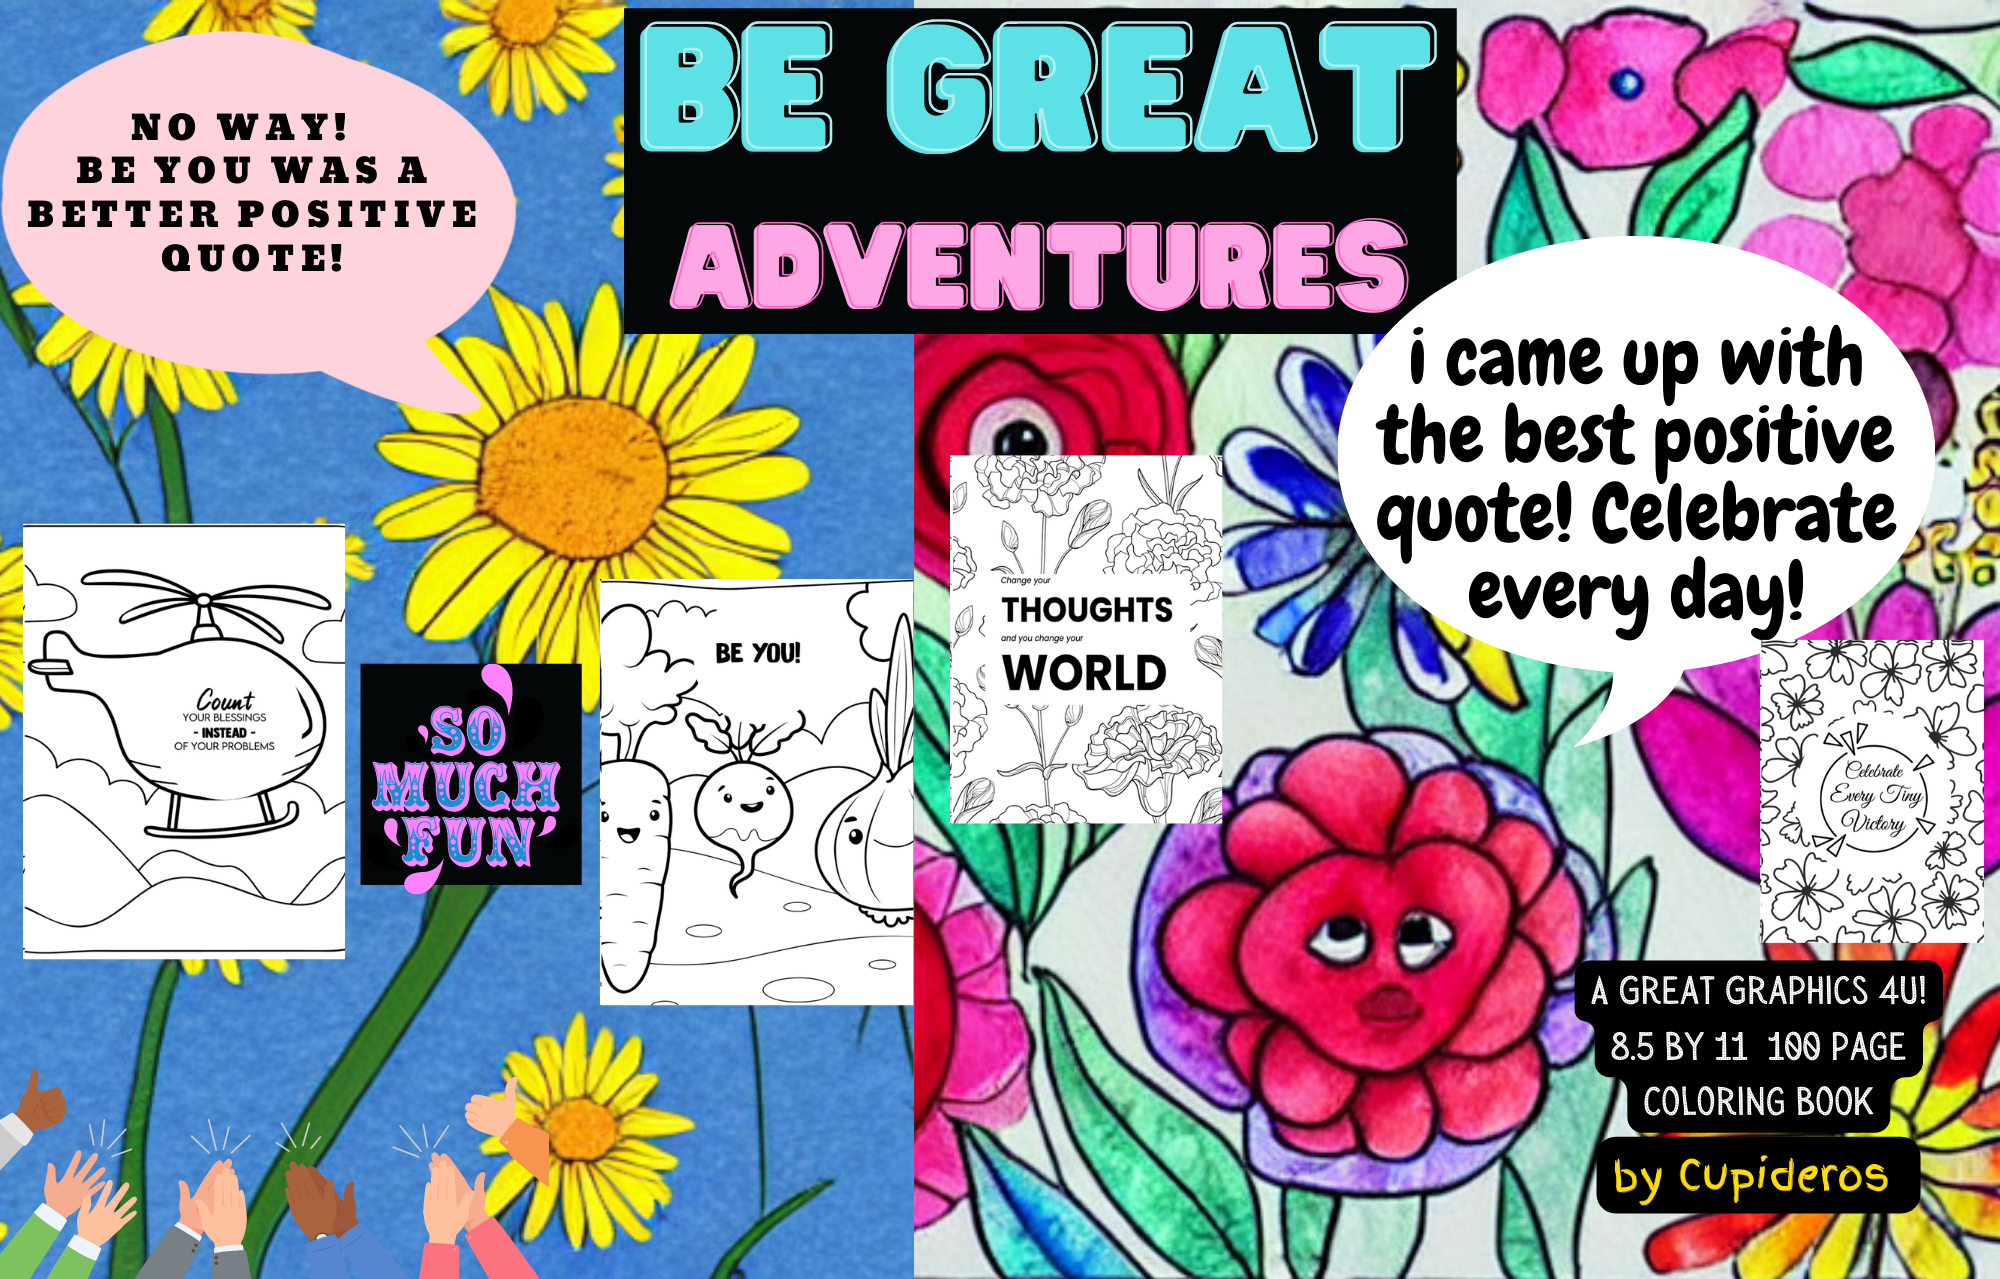 Be Great Art Adventures!